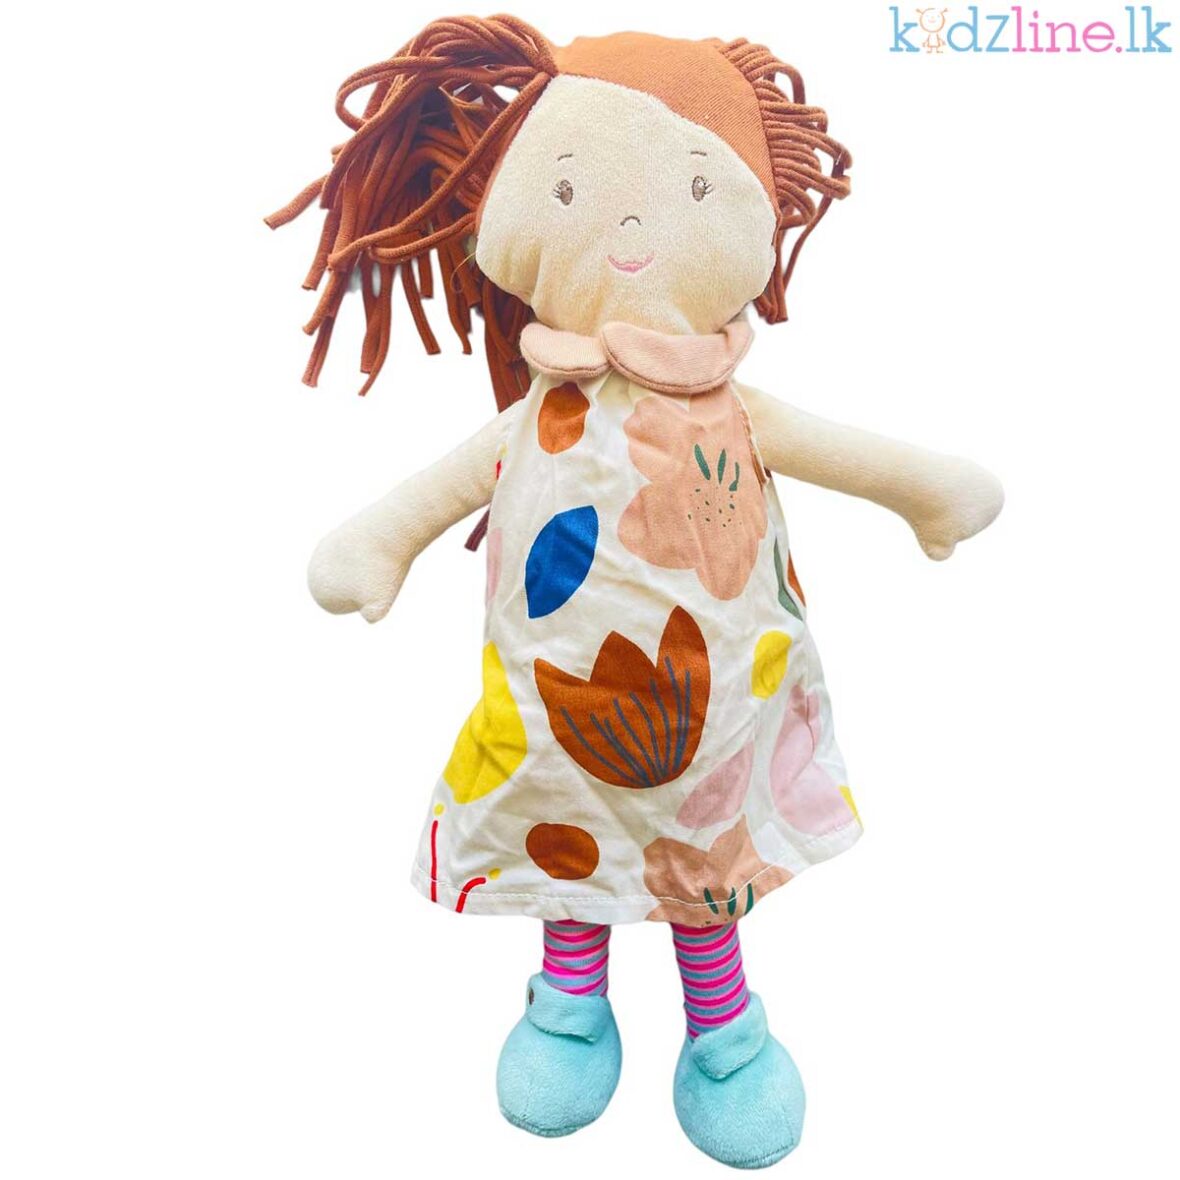 Cute Plush Soft Toy Doll